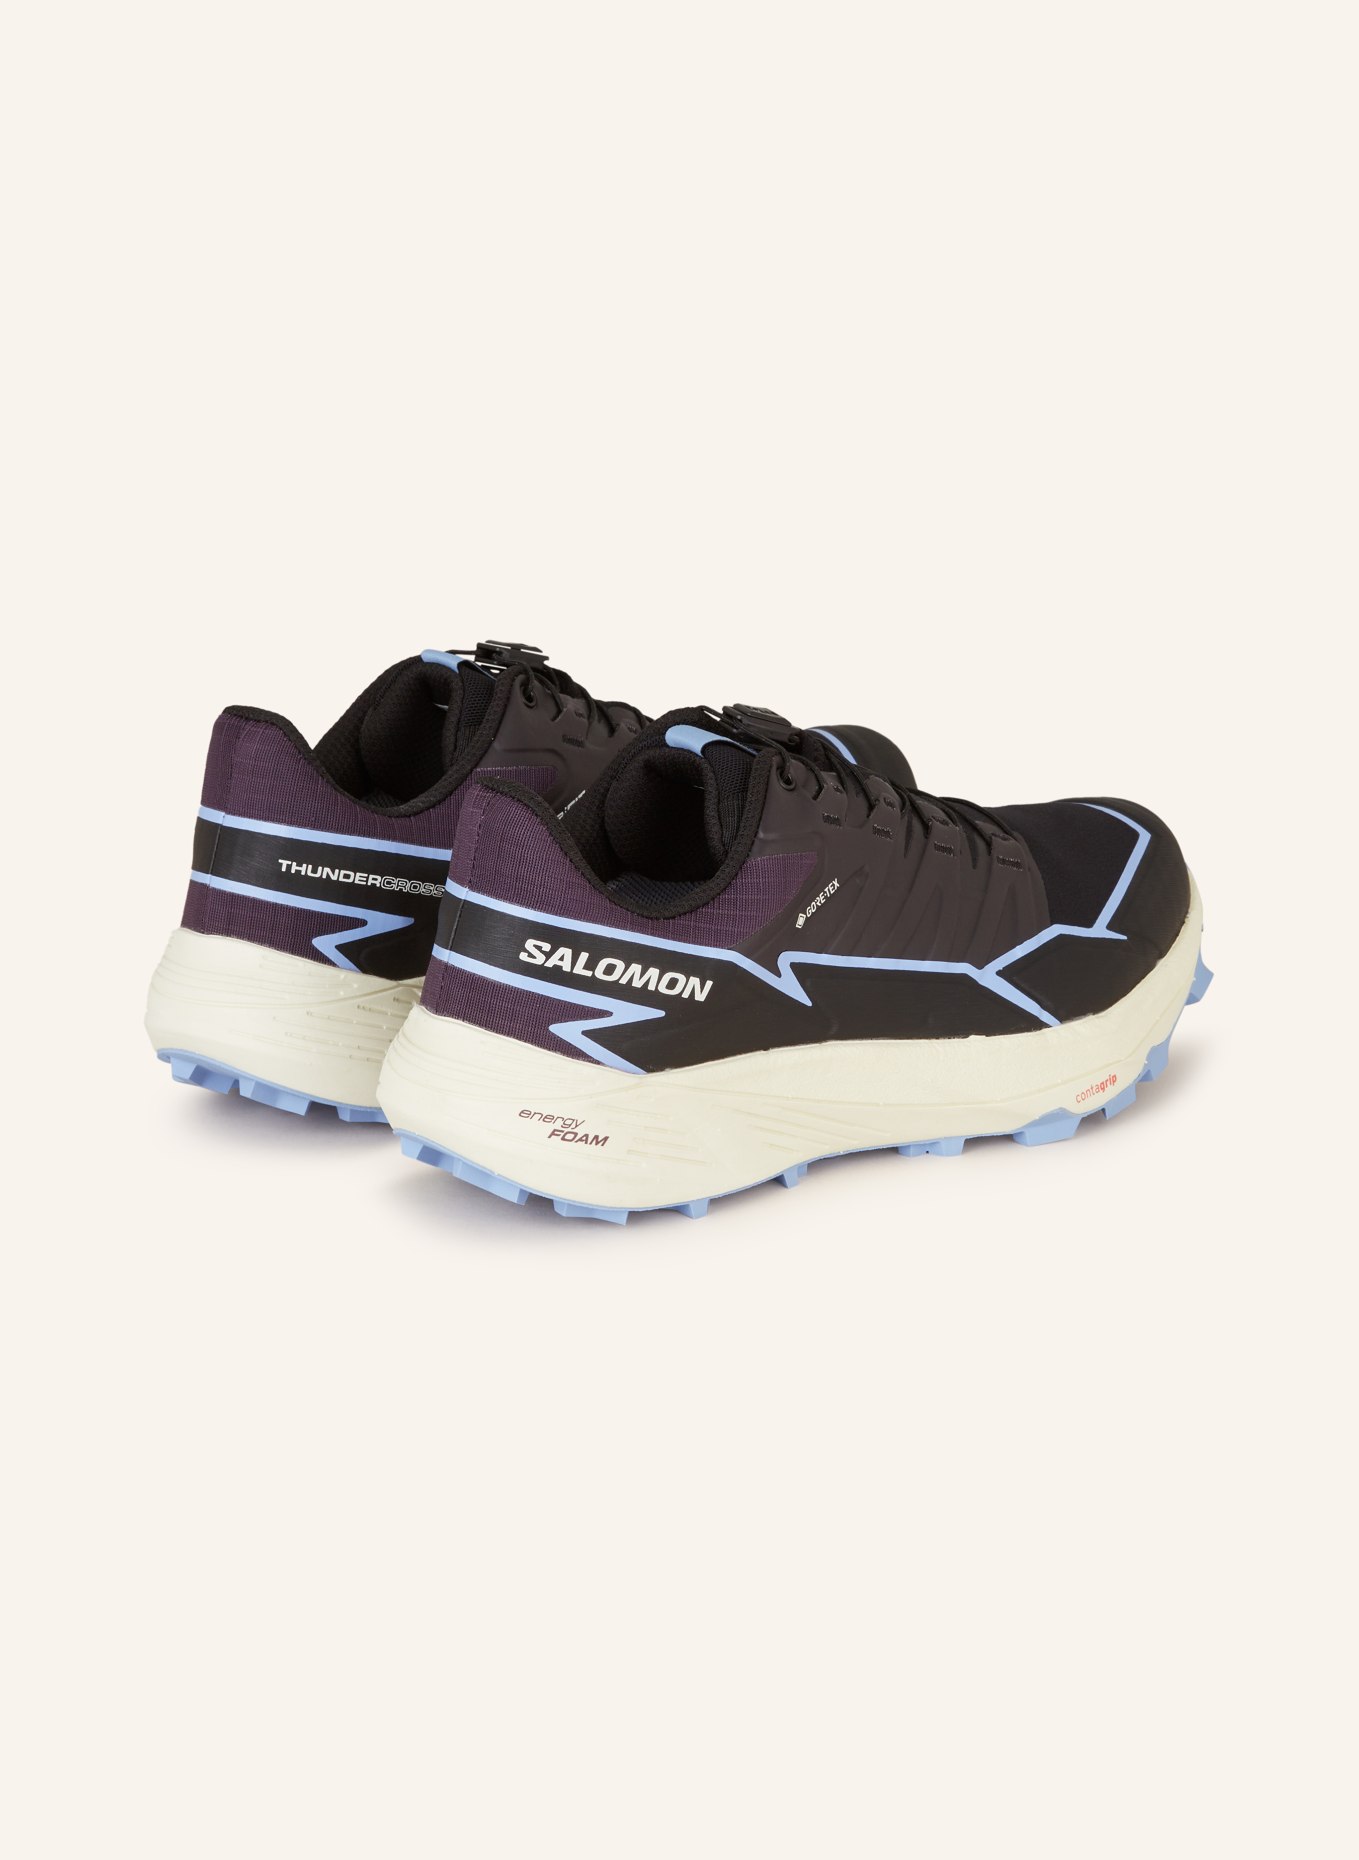 SALOMON Trail running shoes THUNDERCROSS GTX, Color: BLACK/ LIGHT BLUE (Image 2)